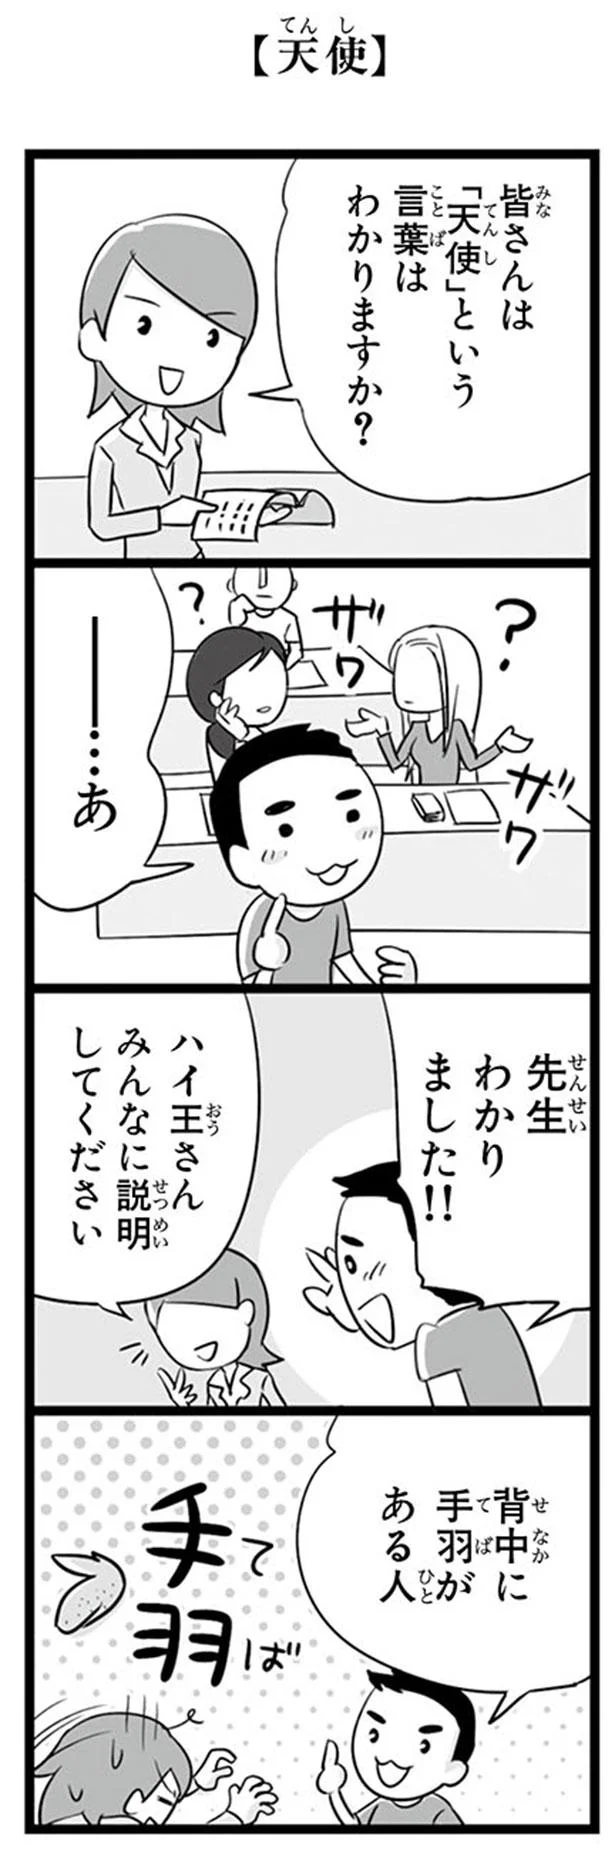 日本語わからないけどわかる 日本語学校へようこそ 日本人の知らない日本語 3 画像3 7 レタスクラブ